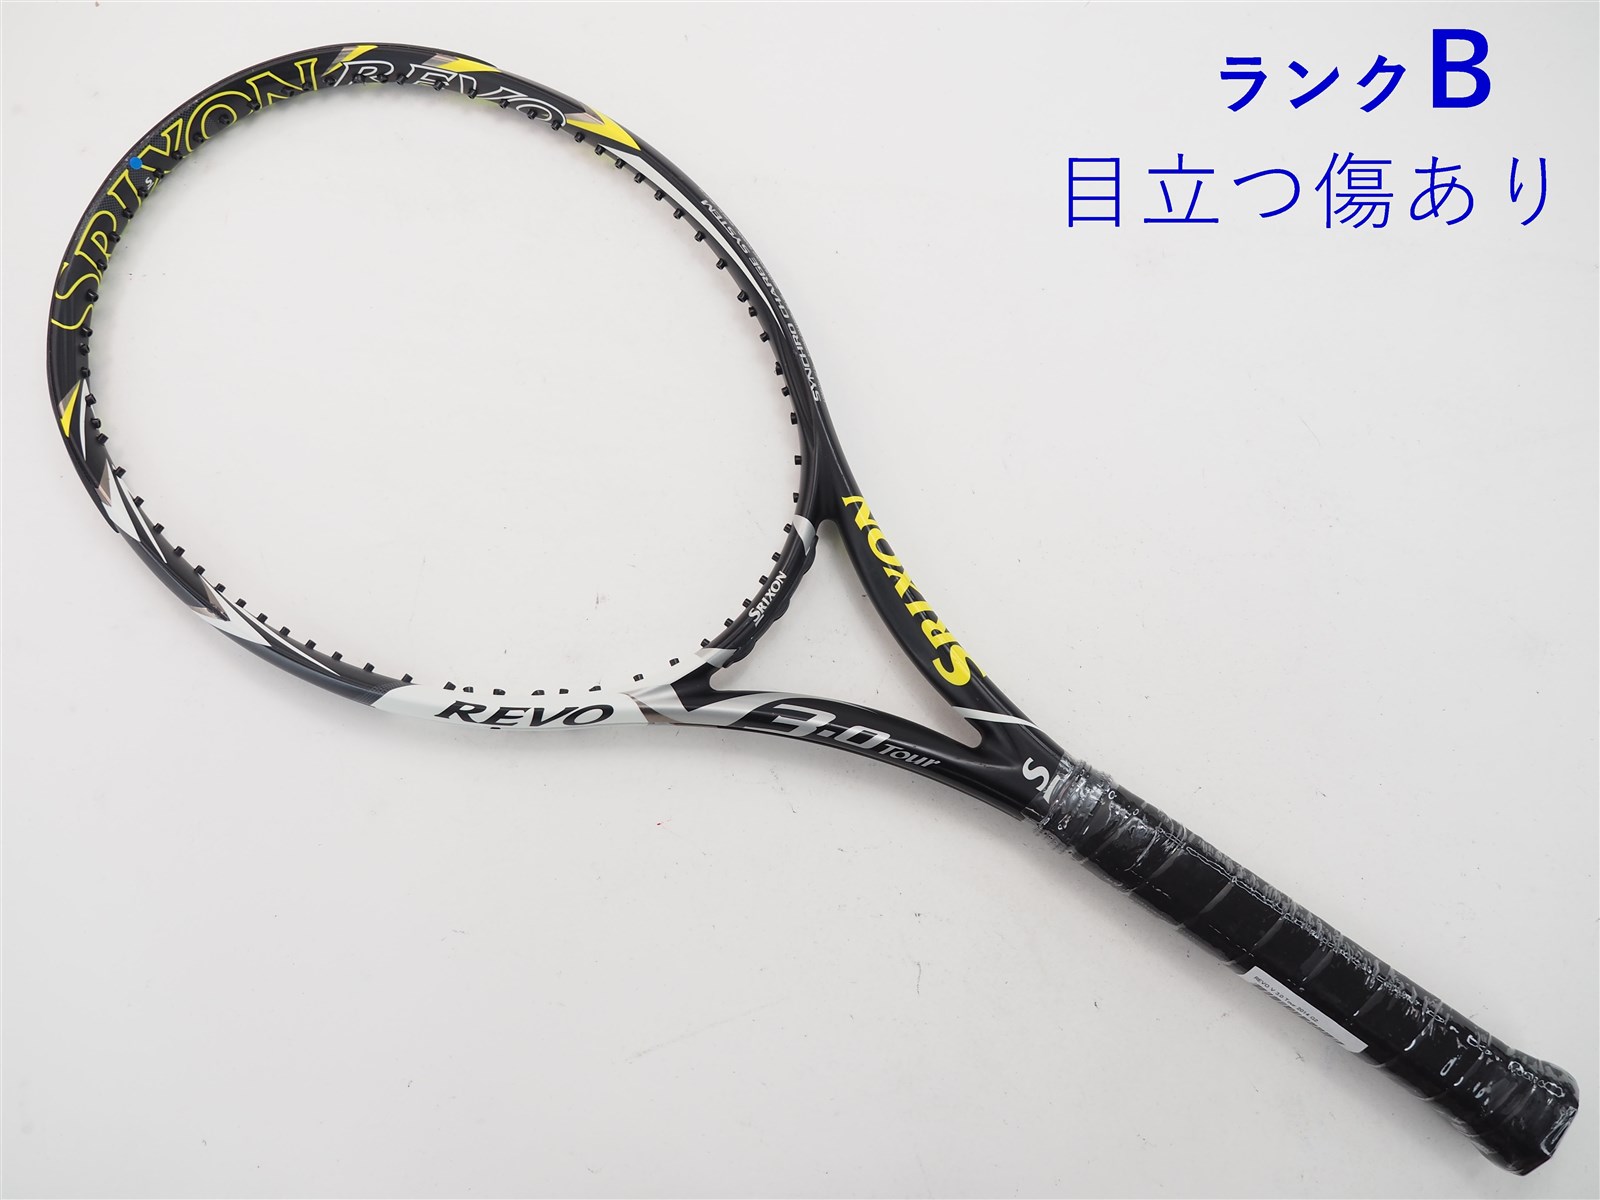 テニスラケット スリクソン レヴォ ブイ 3.0 ツアー 2014年モデル (G2)SRIXON REVO V 3.0 Tour 201497平方インチ長さ